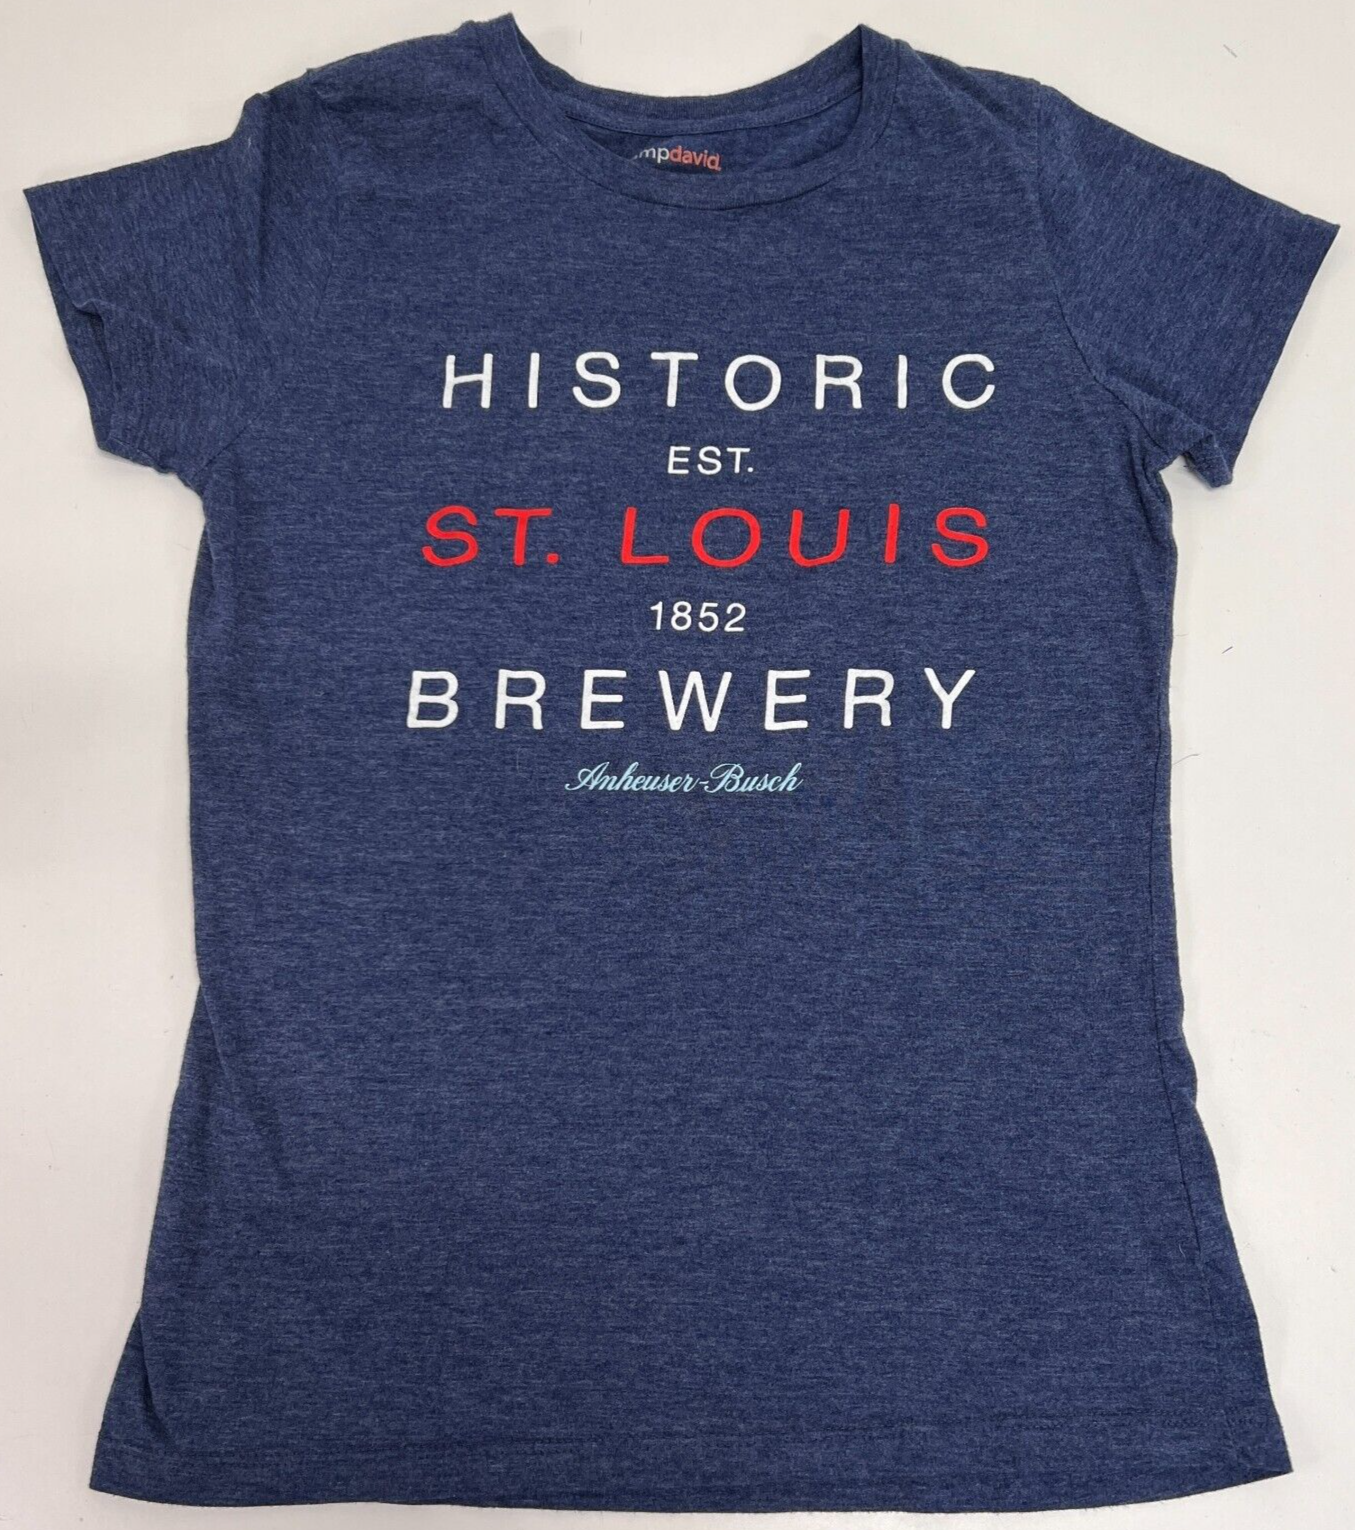 Anheuser Busch St. Louis Brewery Women s Blue T-Shirt Camp David Size Large